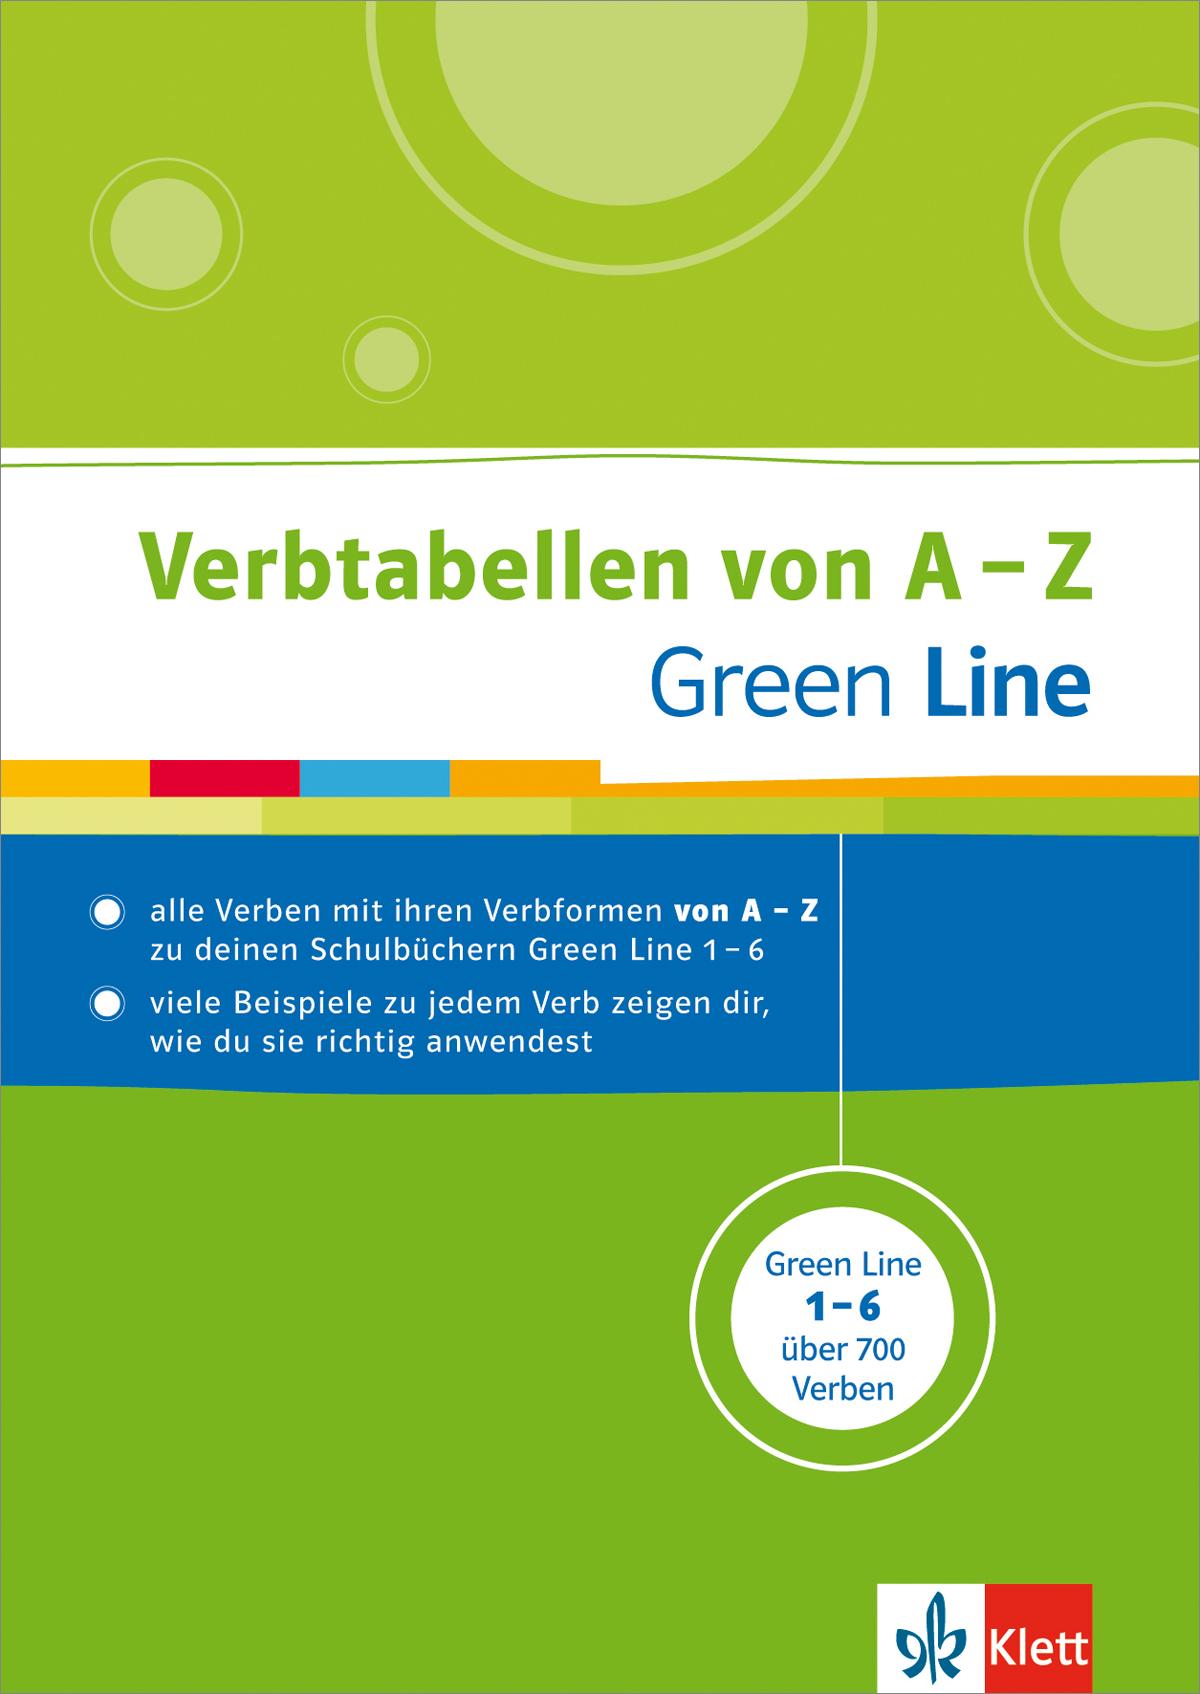 Green Line - Verbtabellen von A - Z